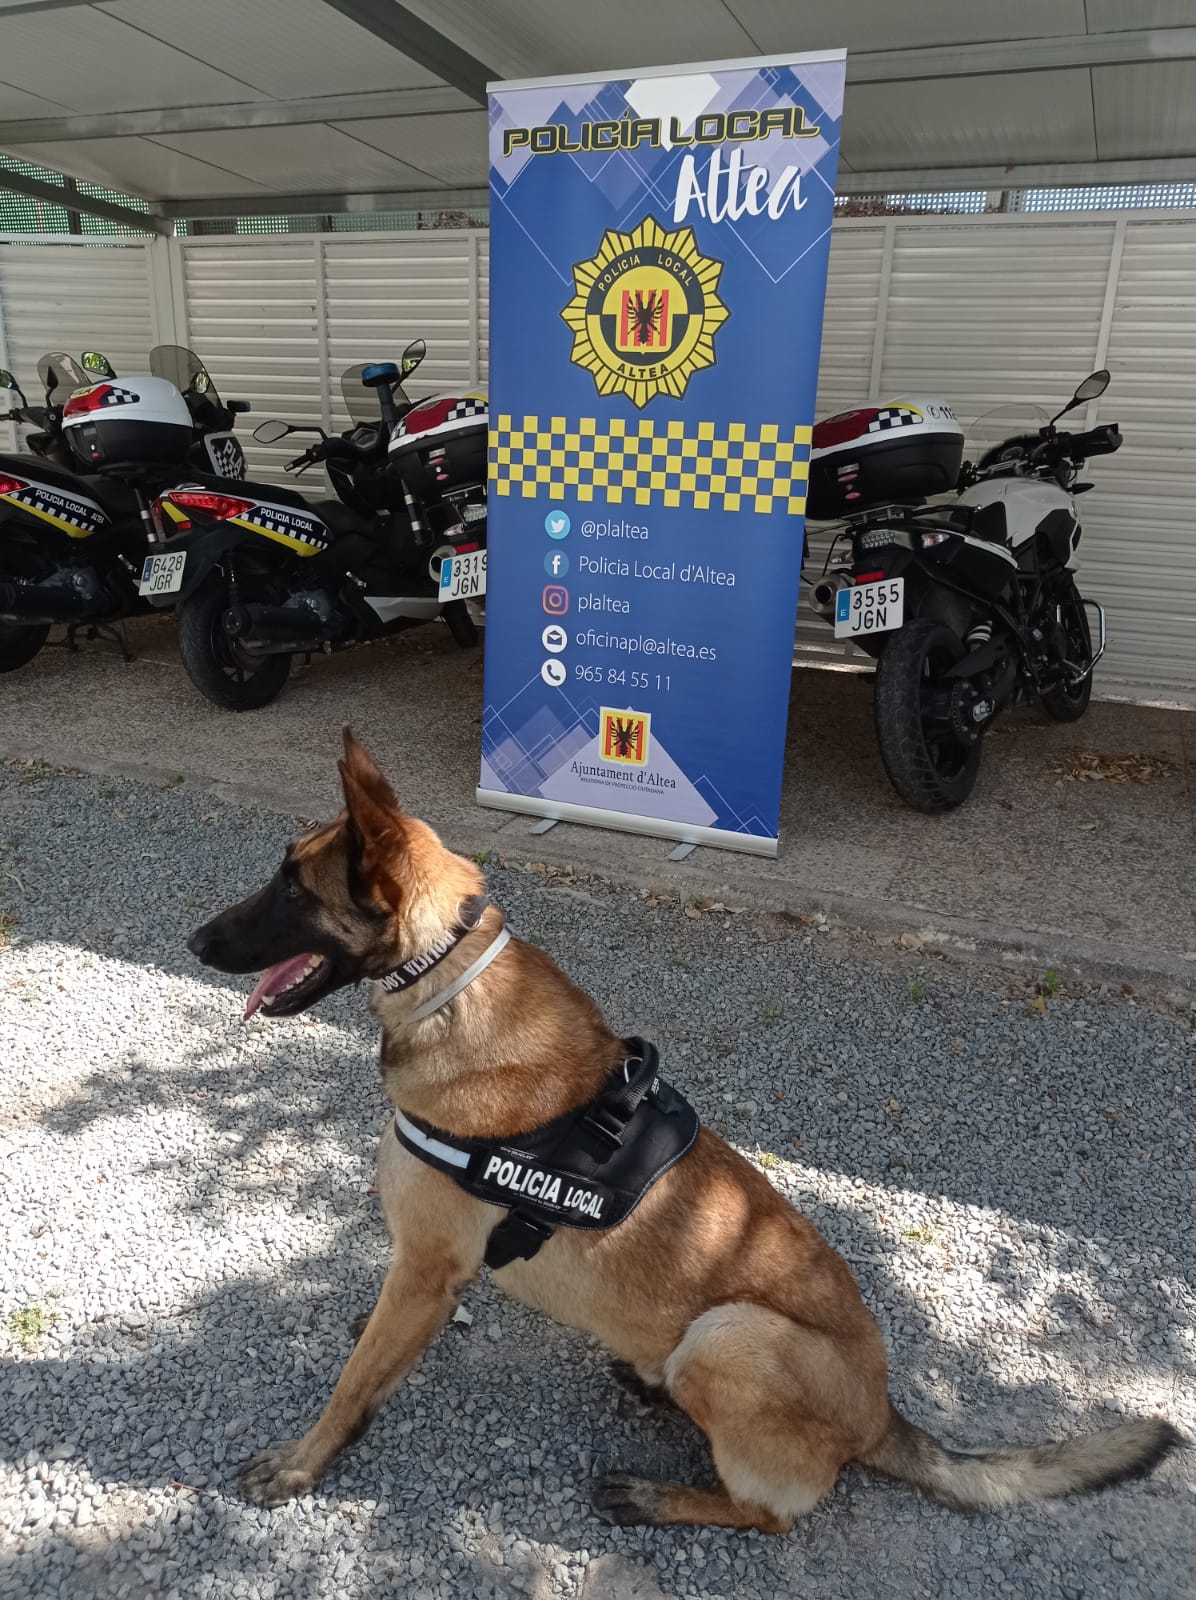 La Policia Local incrementa un 20% les actuacions per tinença i consum de drogues des de la implantació de la unitat canina